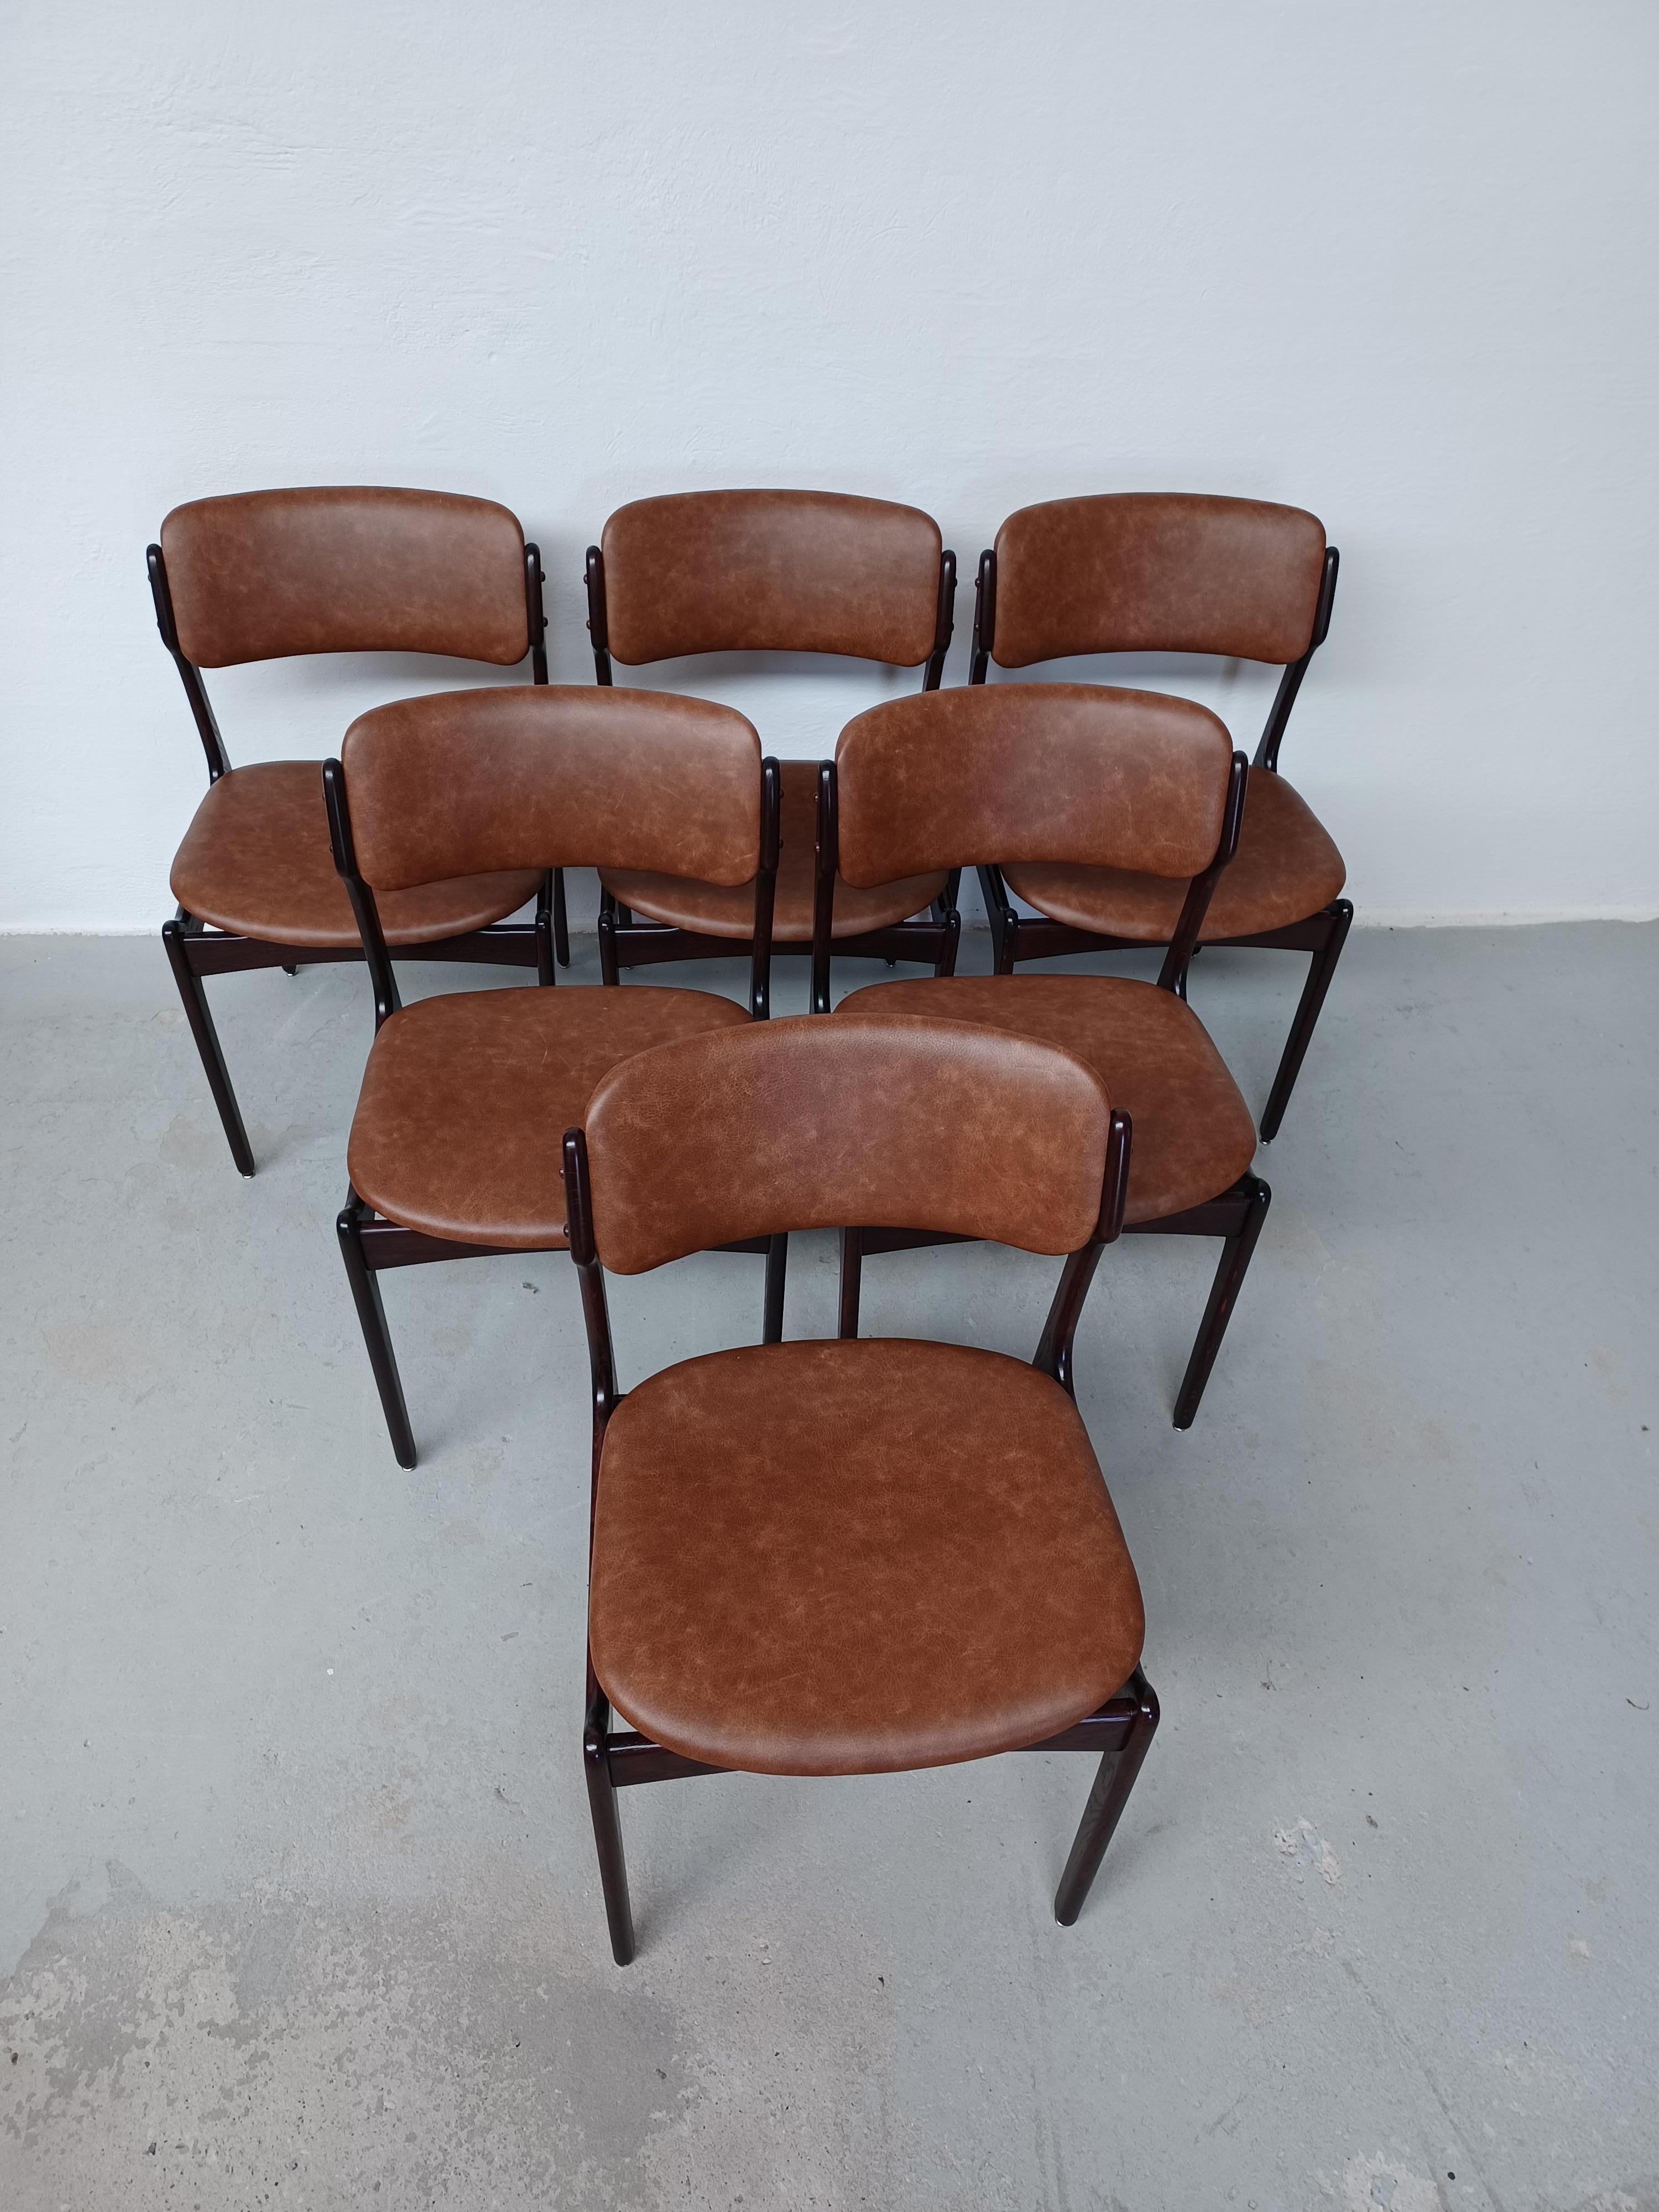 1960er-Jahre-Satz von sechs  vollständig restaurierte Erik-Buch-Esszimmerstühle aus gegerbter Eiche und maßgefertigter Polsterung.

Die Stühle haben eine einfache, aber solide Konstruktion mit eleganten Linien und bieten ein sehr bequemes